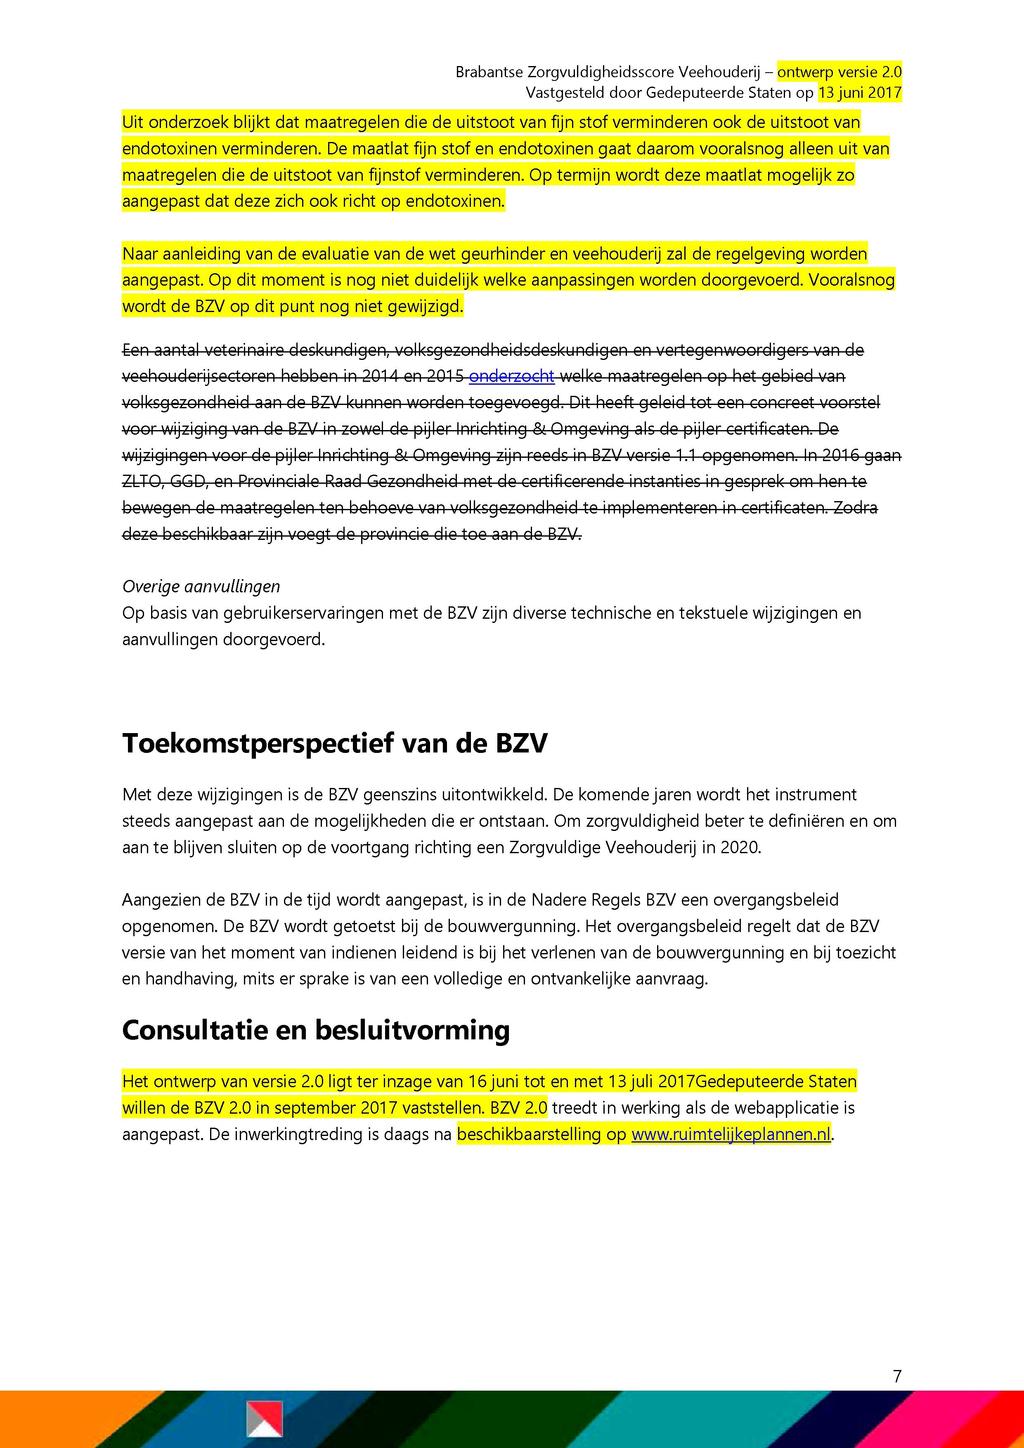 Brabantse Zorgvuldigheidsscore Veehouderij - ontwerp versie 2.0 Uit onderzoek blijkt dat maatregelen die de uitstoot van fijn stof verminderen ook de uitstoot van endotoxinen verminderen.